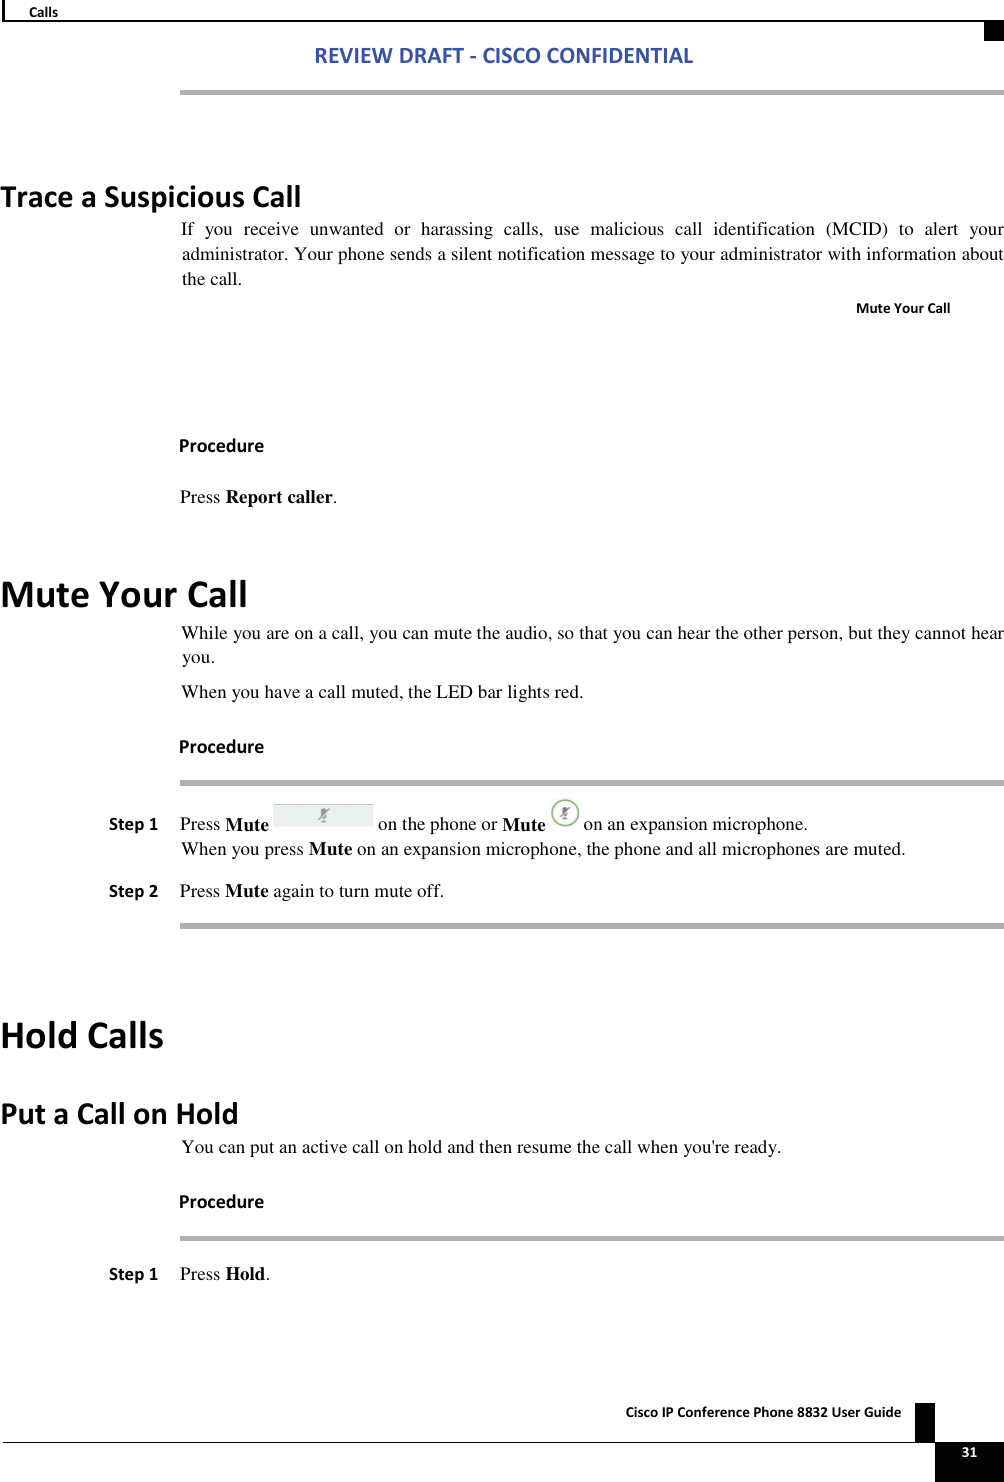 Zs/tZ&amp;dͲ/^KKE&amp;/Ed/&gt; ŝƐĐŽ/WŽŶĨĞƌĞŶĐĞWŚŽŶĞϴϴϯϮhƐĞƌ&apos;ƵŝĚĞ   ϯϭ ĂůůƐ  dƌĂĐĞĂ^ƵƐƉŝĐŝŽƵƐĂůůIf you receive unwanted or harassing calls, use malicious call identification (MCID) to alert your administrator. Your phone sends a silent notification message to your administrator with information about the call. DƵƚĞzŽƵƌĂůů WƌŽĐĞĚƵƌĞ Press Report caller. DƵƚĞzŽƵƌĂůůWhile you are on a call, you can mute the audio, so that you can hear the other person, but they cannot hear you. When you have a call muted, the LED bar lights red. WƌŽĐĞĚƵƌĞ^ƚĞƉϭWhen you press Mute on an expansion microphone, the phone and all microphones are muted. ^ƚĞƉϮ Press Mute again to turn mute off.  ,ŽůĚĂůůƐWƵƚĂĂůůŽŶ,ŽůĚYou can put an active call on hold and then resume the call when you&apos;re ready. WƌŽĐĞĚƵƌĞ ^ƚĞƉϭ Press Hold. Press Mute on the phone orMute on an expansion microphone. 